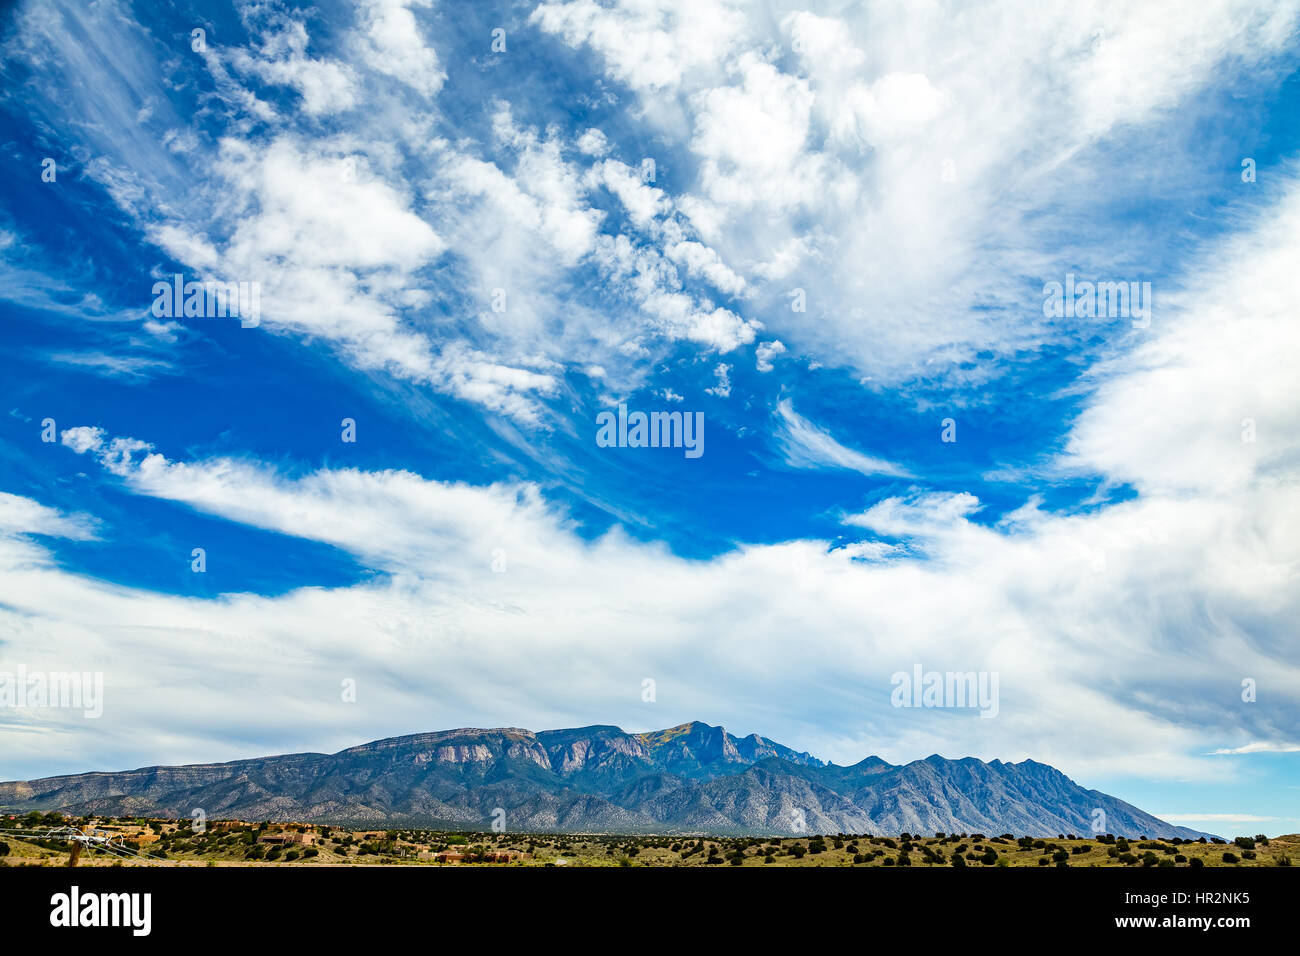 A view of Palomas Peak in the Sandia Mountains near Bernalillo, New Mexico. Stock Photo